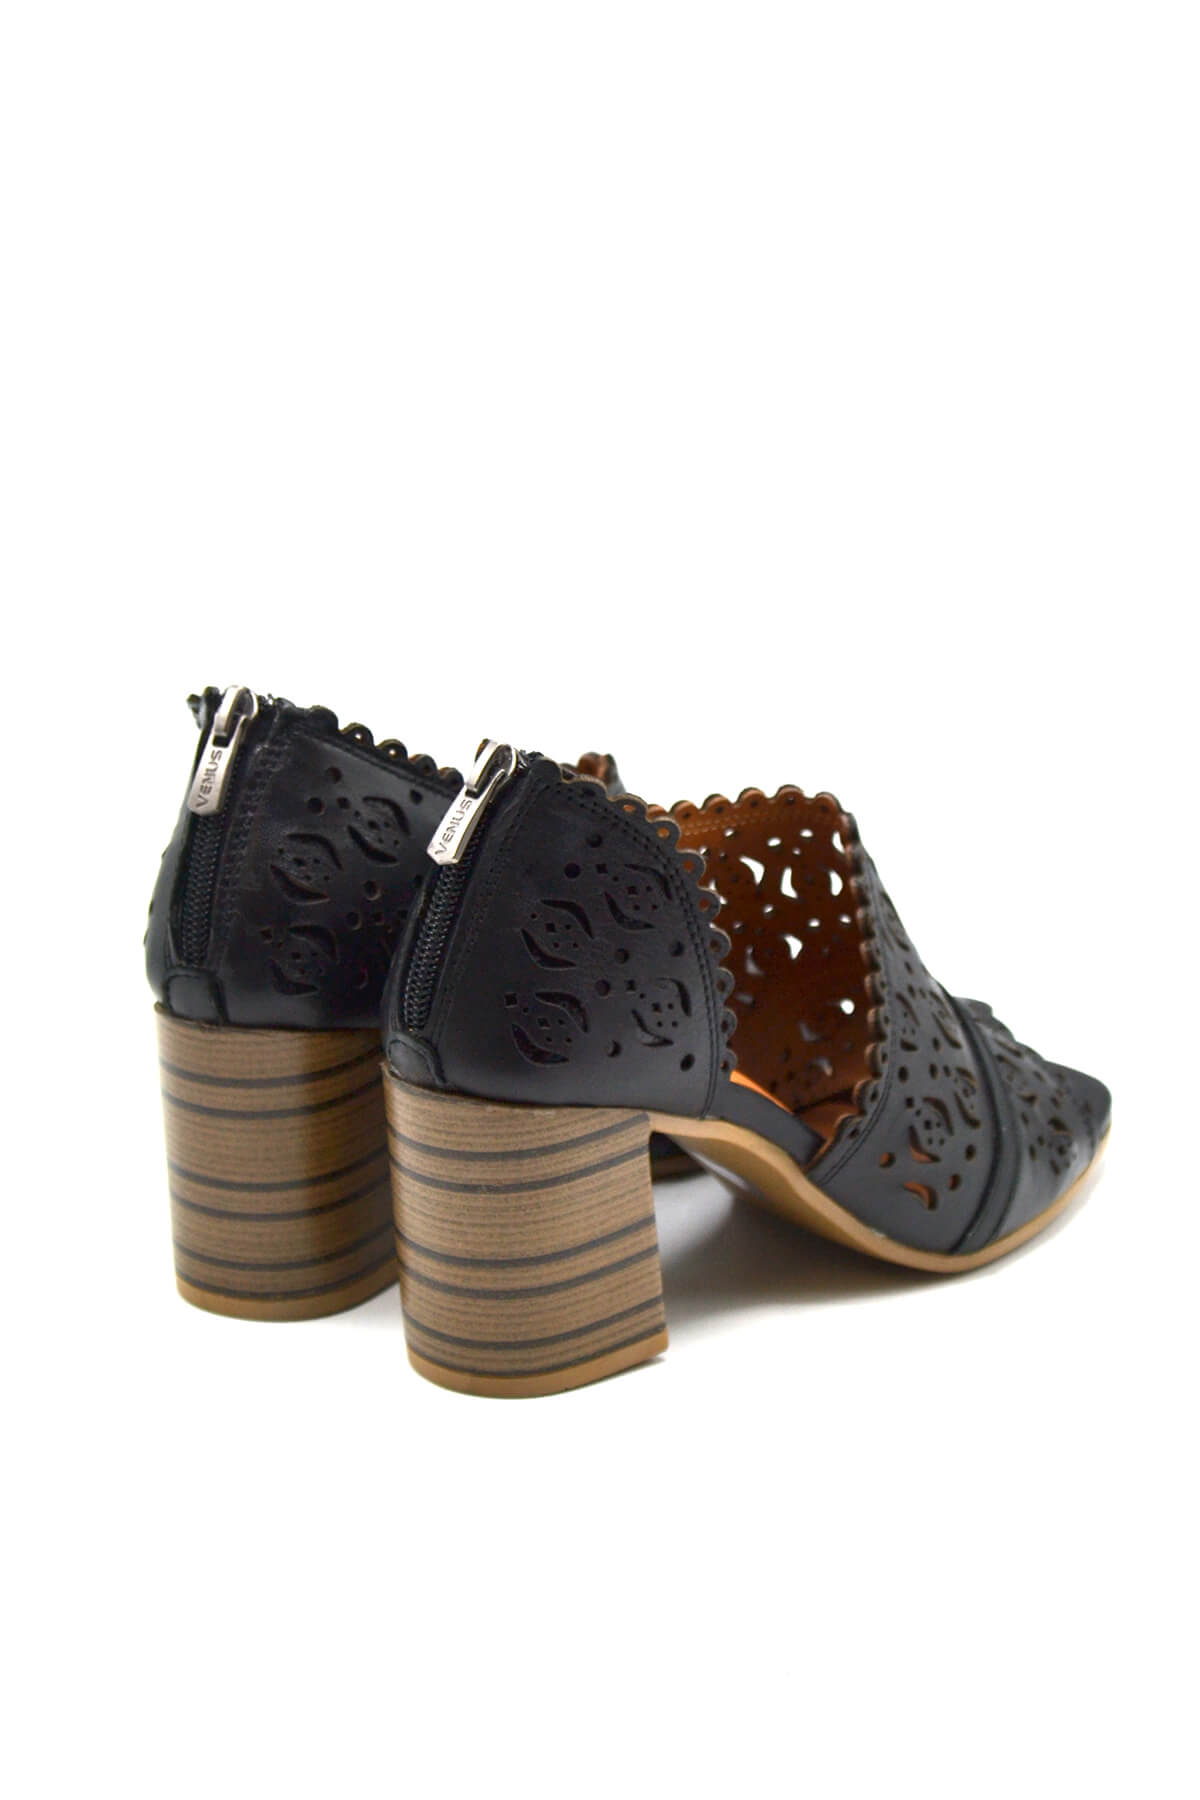 Kadın Yazlık Topuklu Deri Sandalet Siyah 2108511Y - Thumbnail